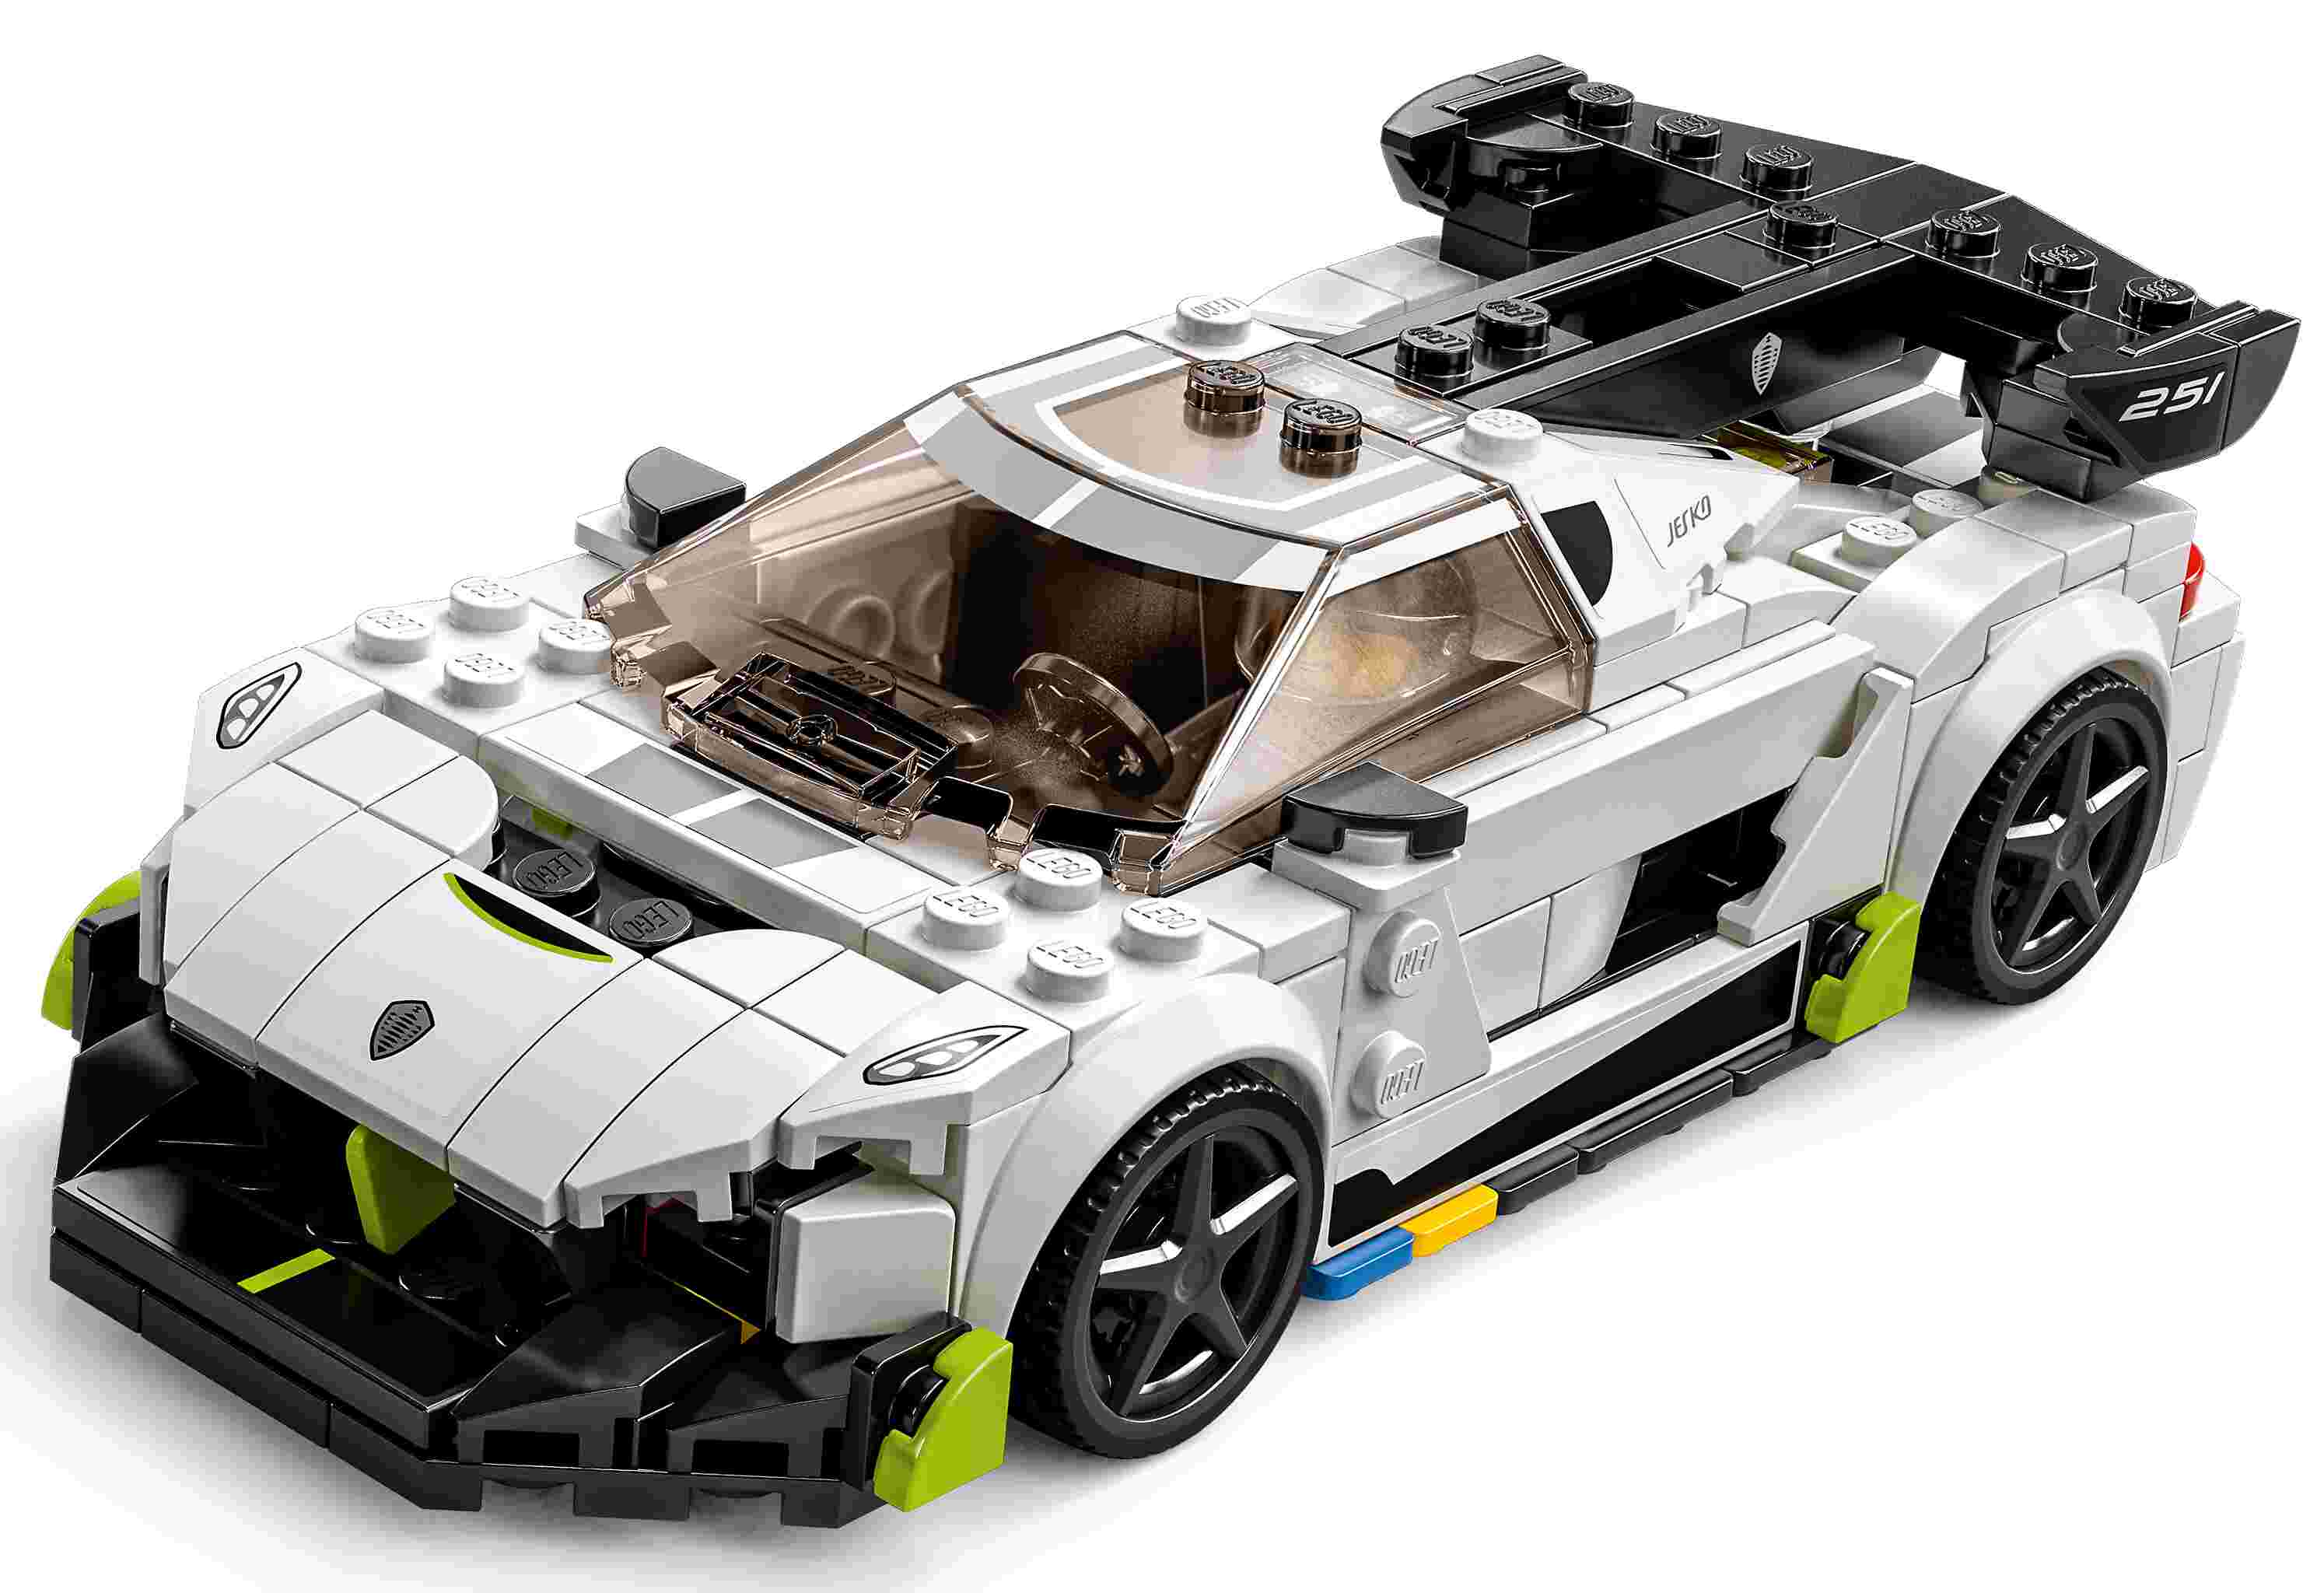 LEGO 76900 Speed Champions Koenigsegg Jesko, Modellauto zum selber Bauen